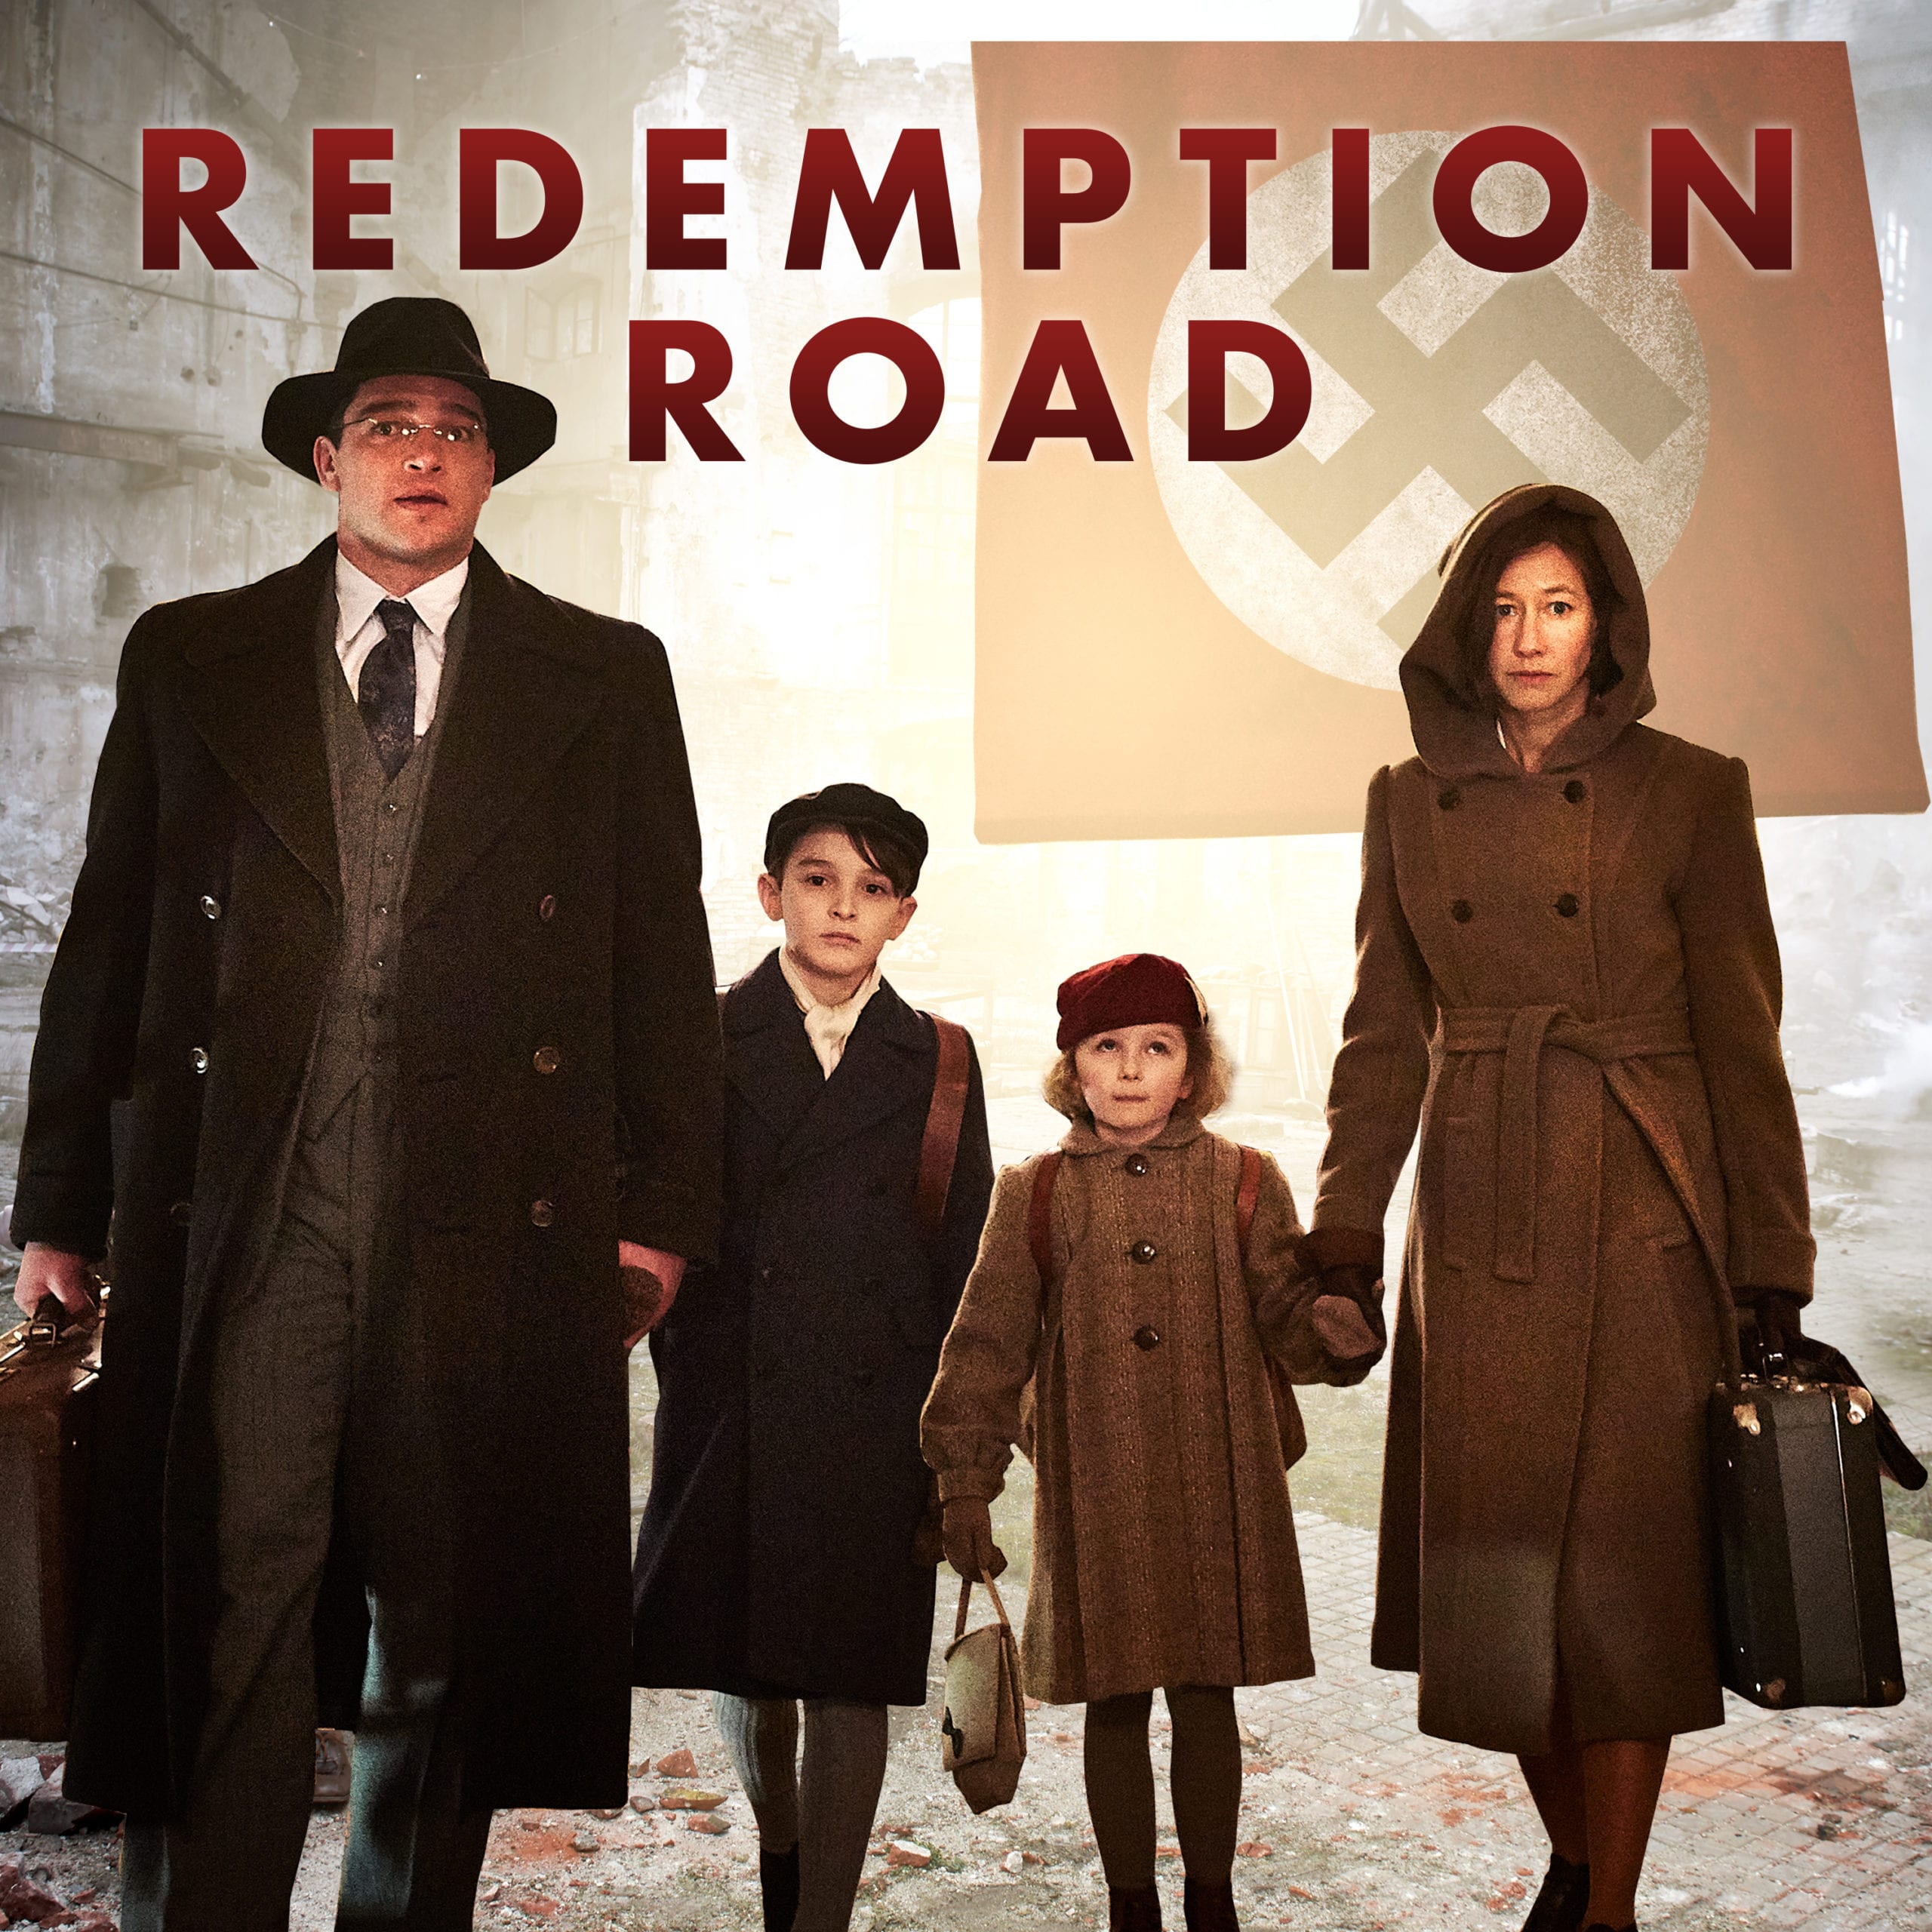 redemption road vimeo ott series banner 3000x3000 1 scaled